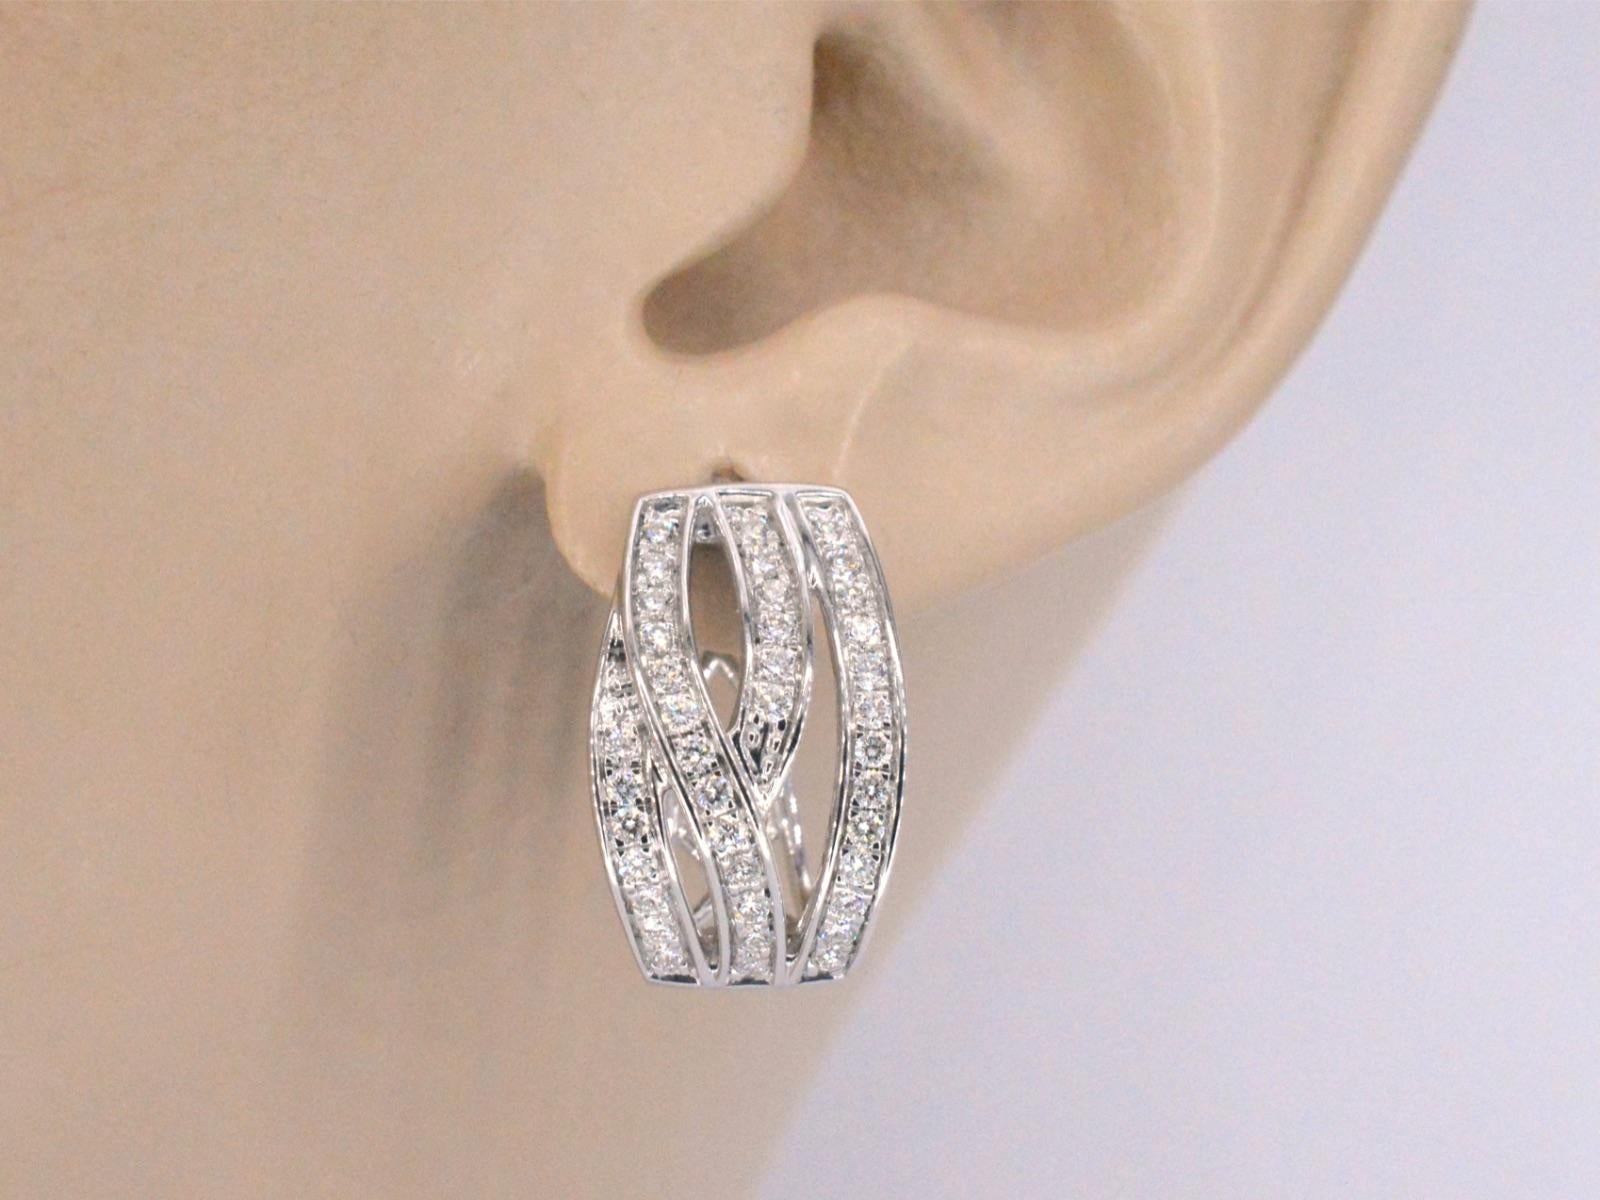 Diese Ohrringe aus Weißgold sind ein atemberaubendes Schmuckstück mit Diamanten im Brillantschliff in einem einzigartigen und modernen Design. Die Diamanten sind fachmännisch in das Weißgold gefasst, um einen nahtlosen und raffinierten Look zu